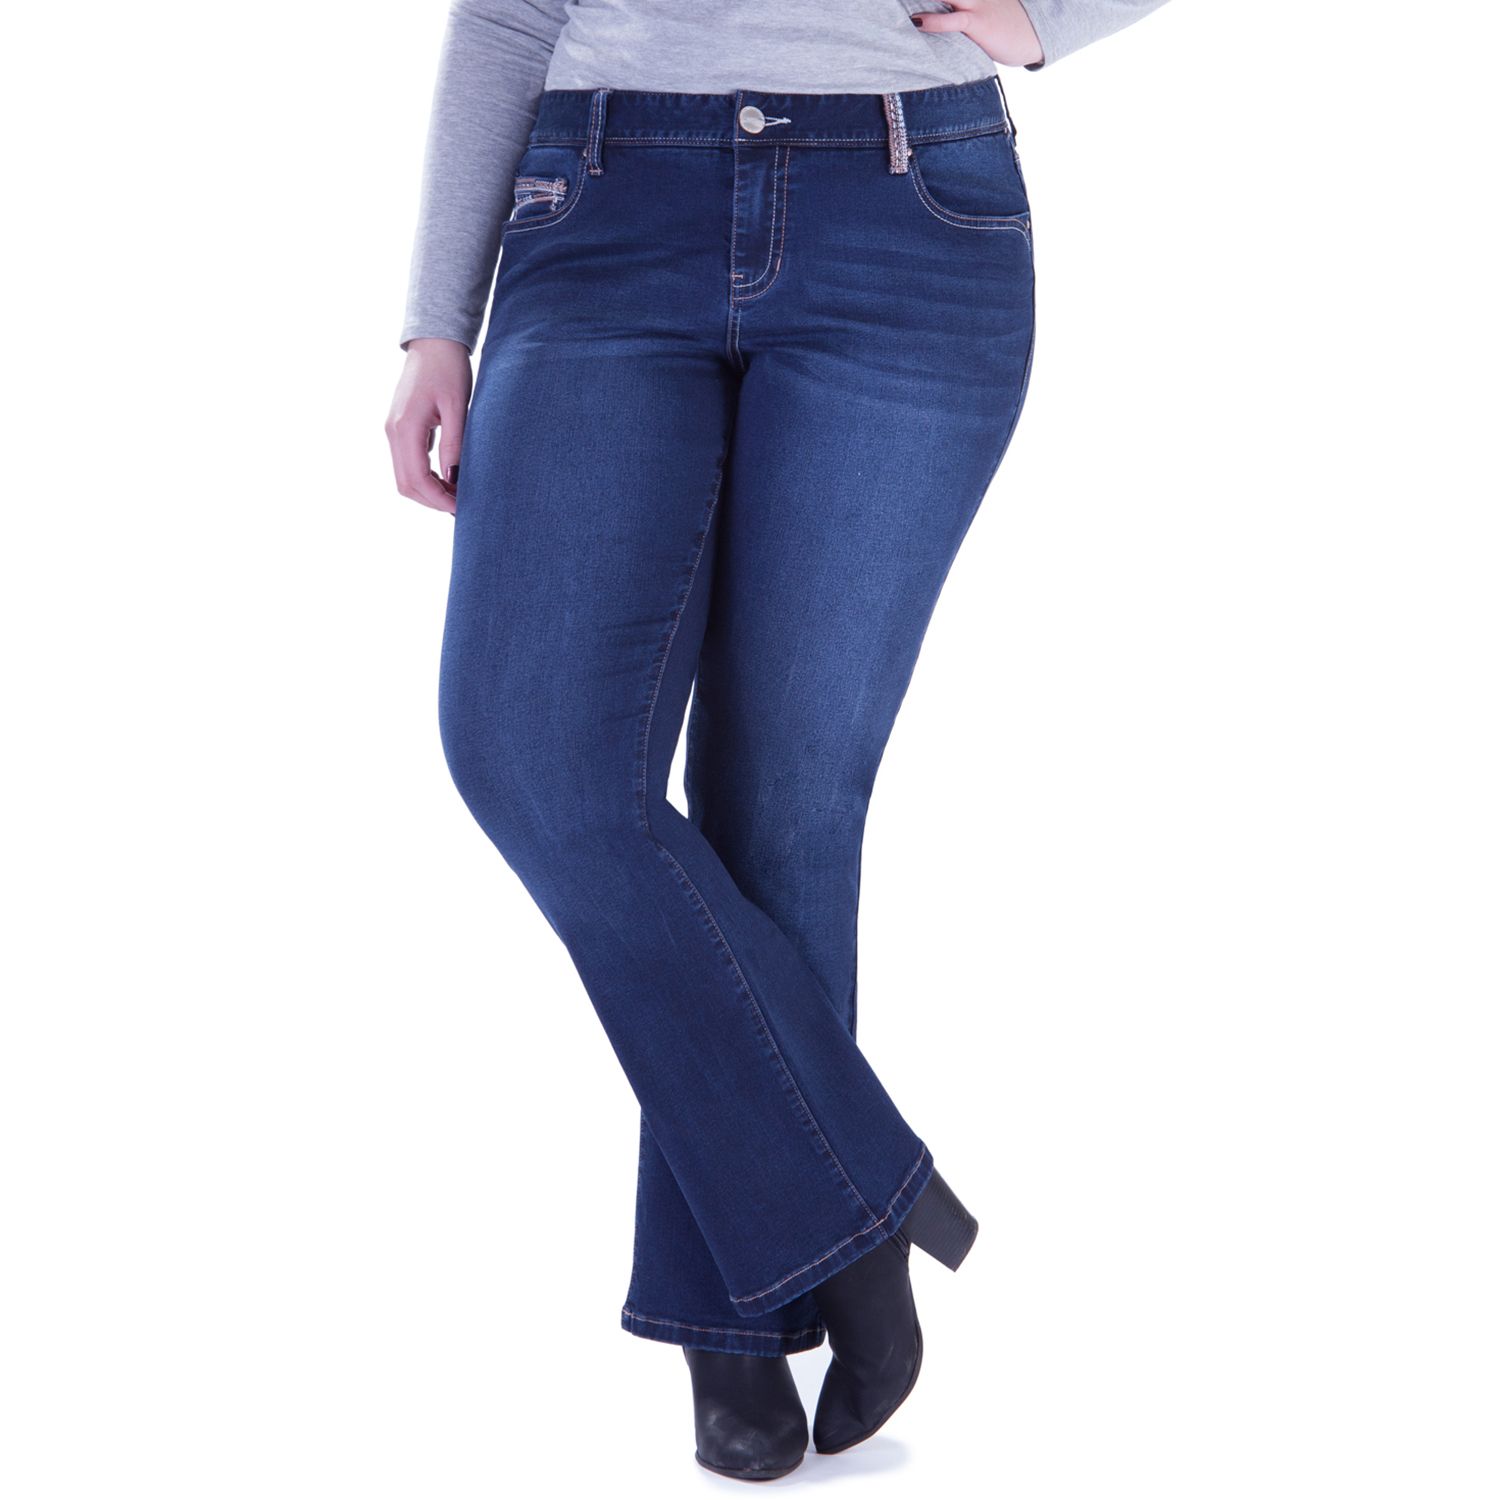 amethyst jeans plus size